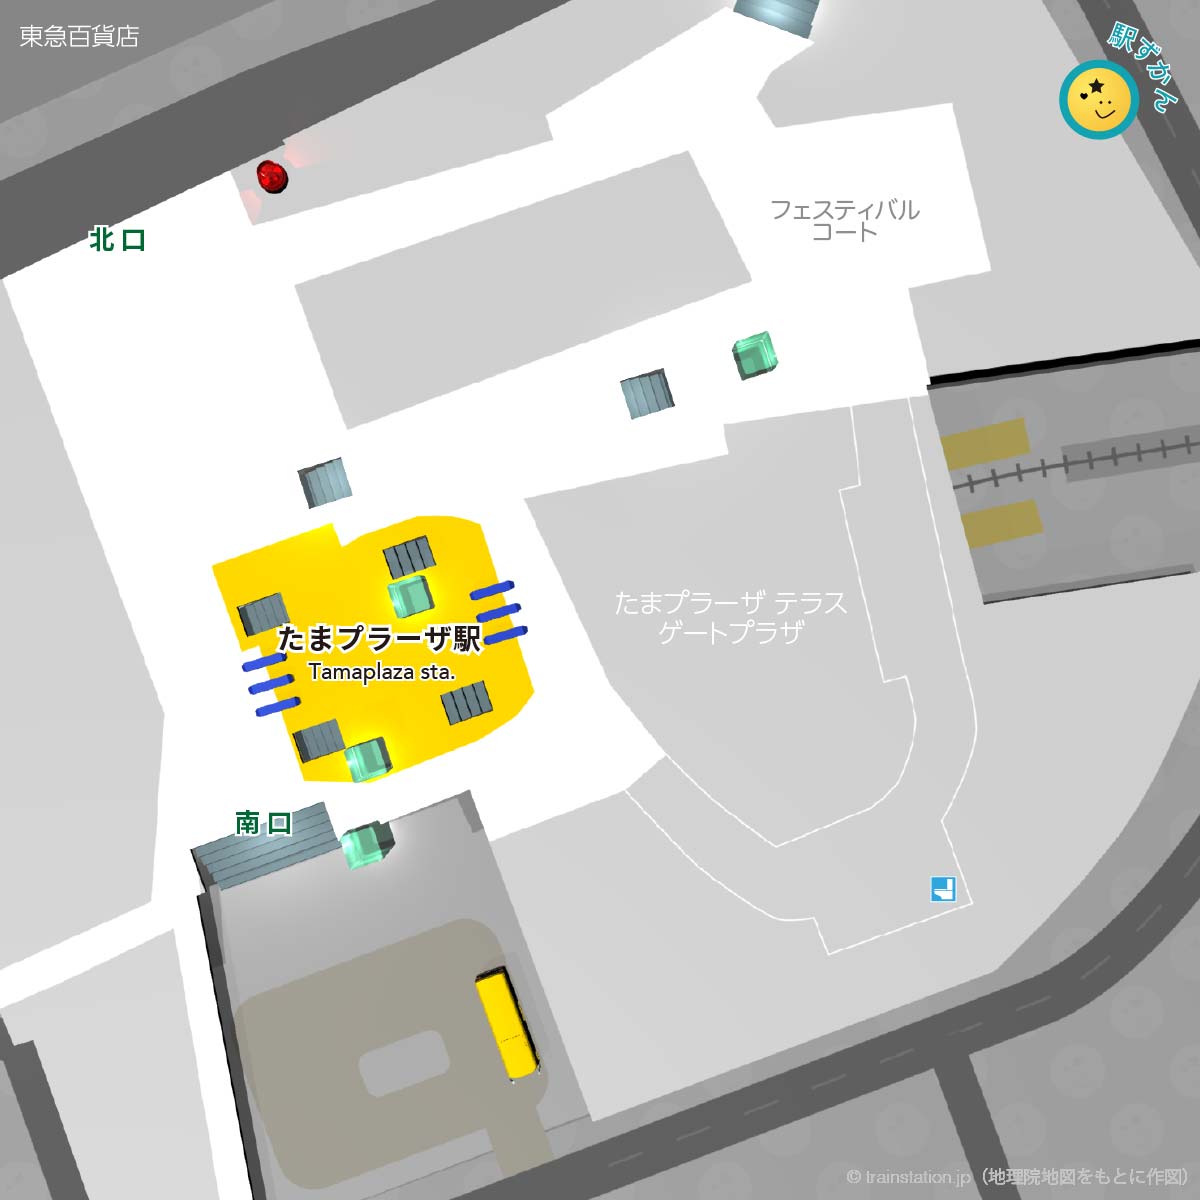 たまプラーザ駅構内図と周辺マップ